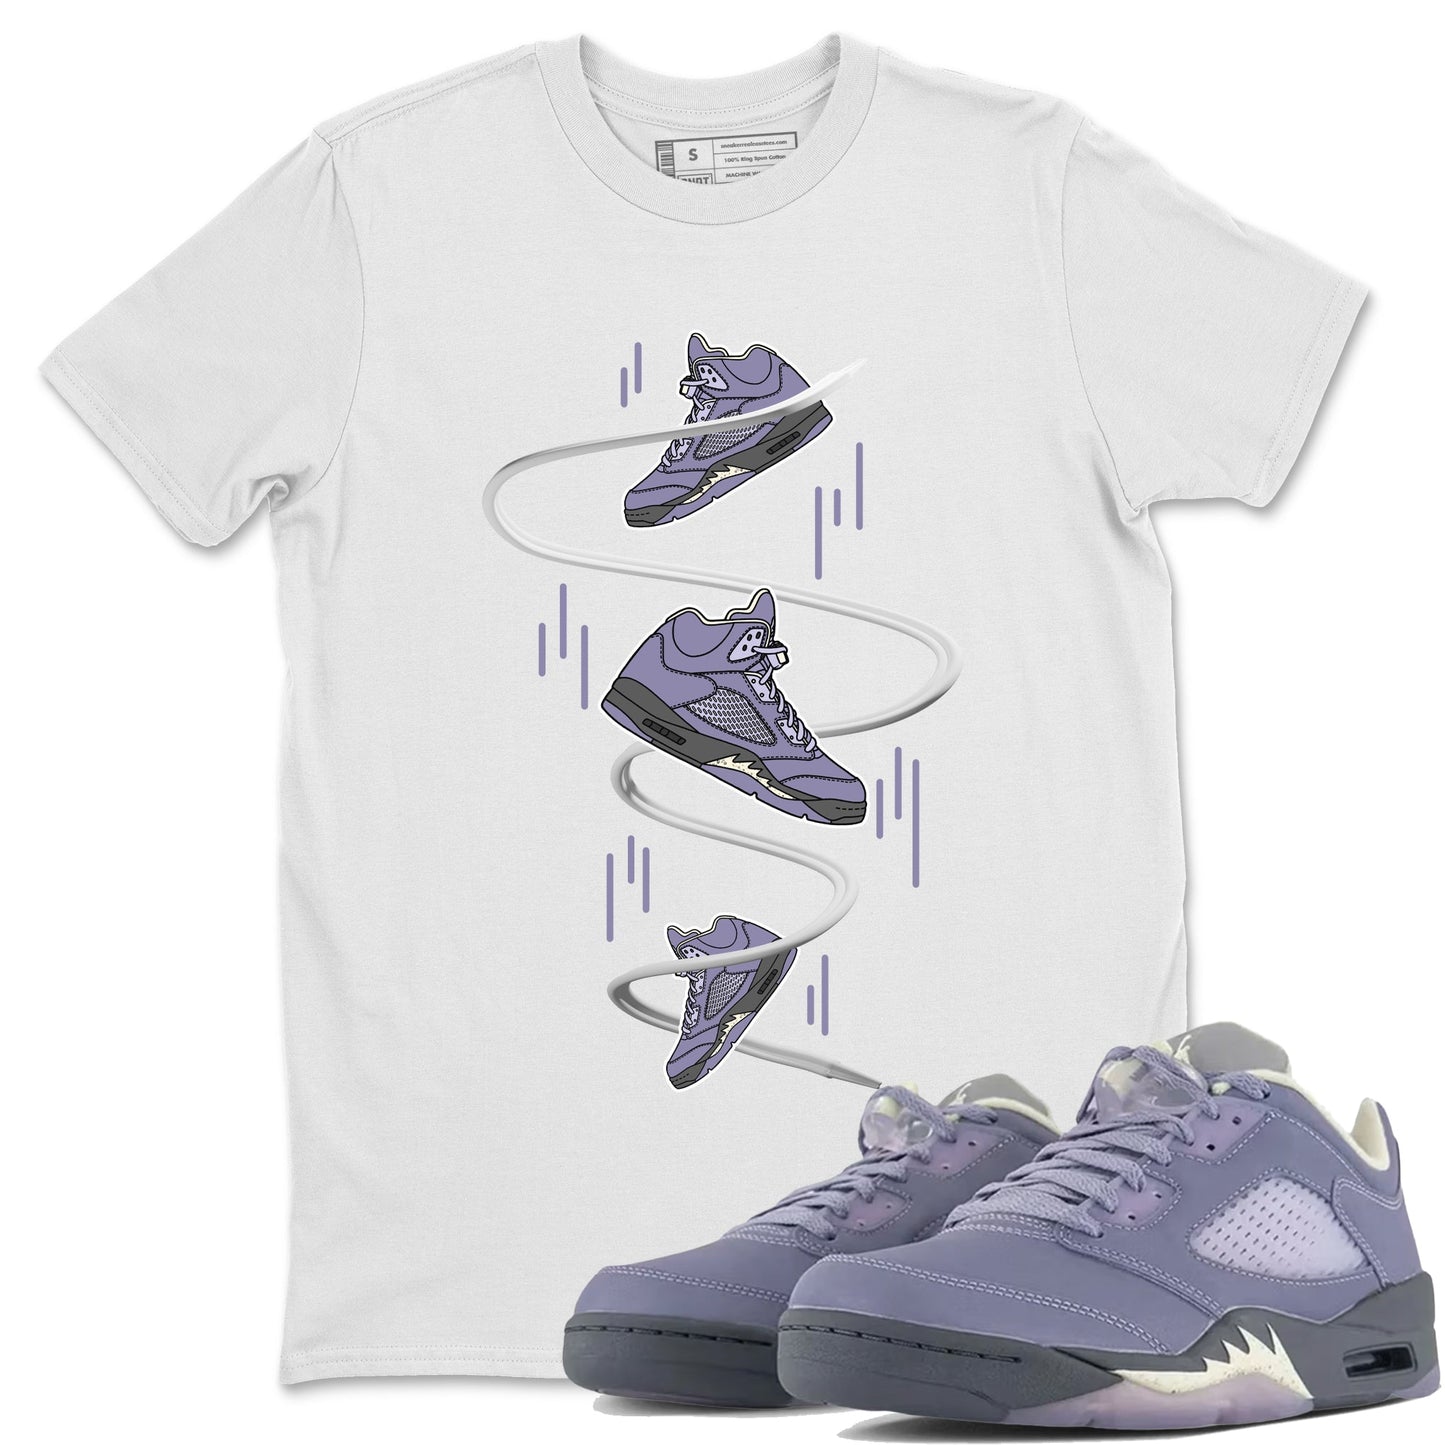 Air Jordan 5 Indigo Haze Sneaker Match Tees Sneaker Drop Sneaker Tees AJ5 Indigo Haze Sneaker Release Tees Unisex Shirts White 1